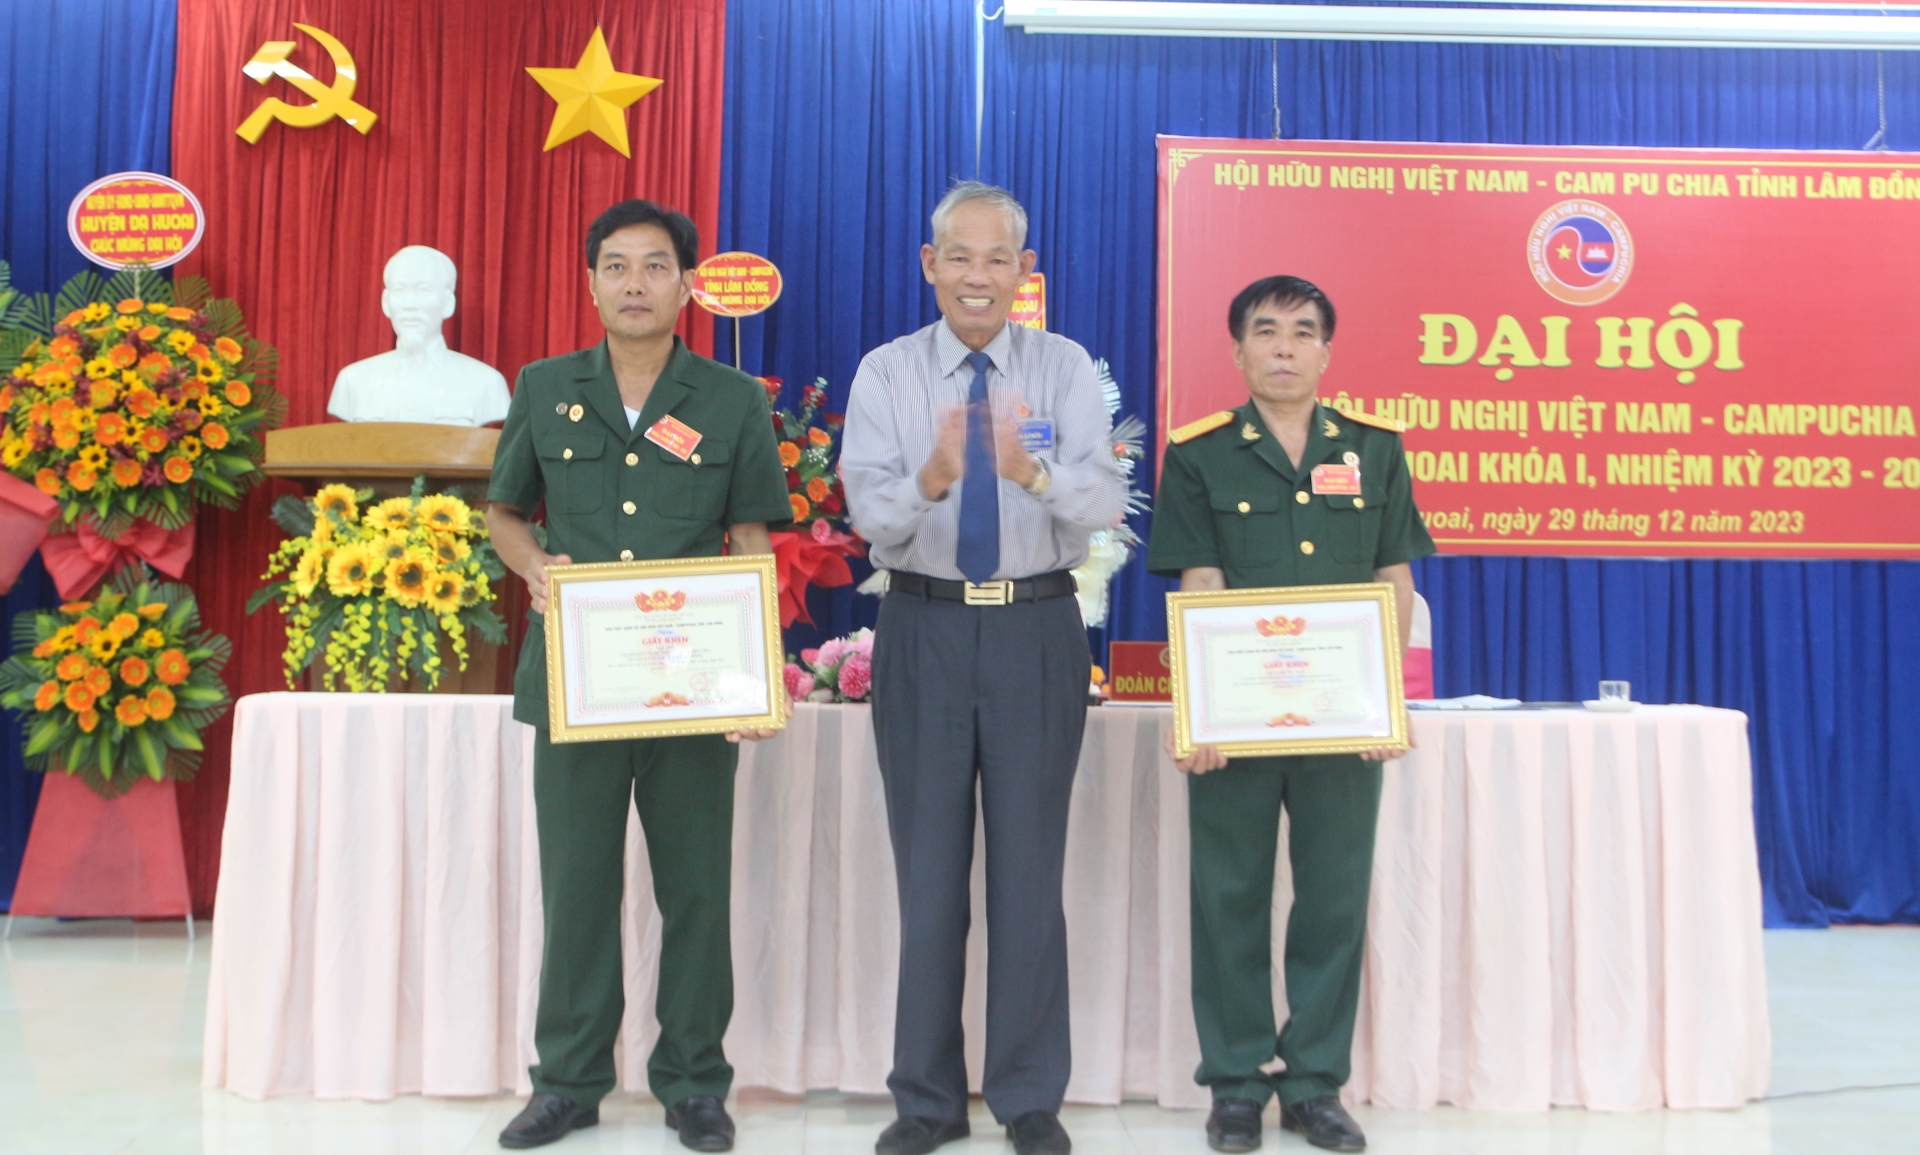 Chi hội Hữu nghị Việt Nam – Campuchia huyện Đạ Huoai tổ chức Đại hội Khóa I